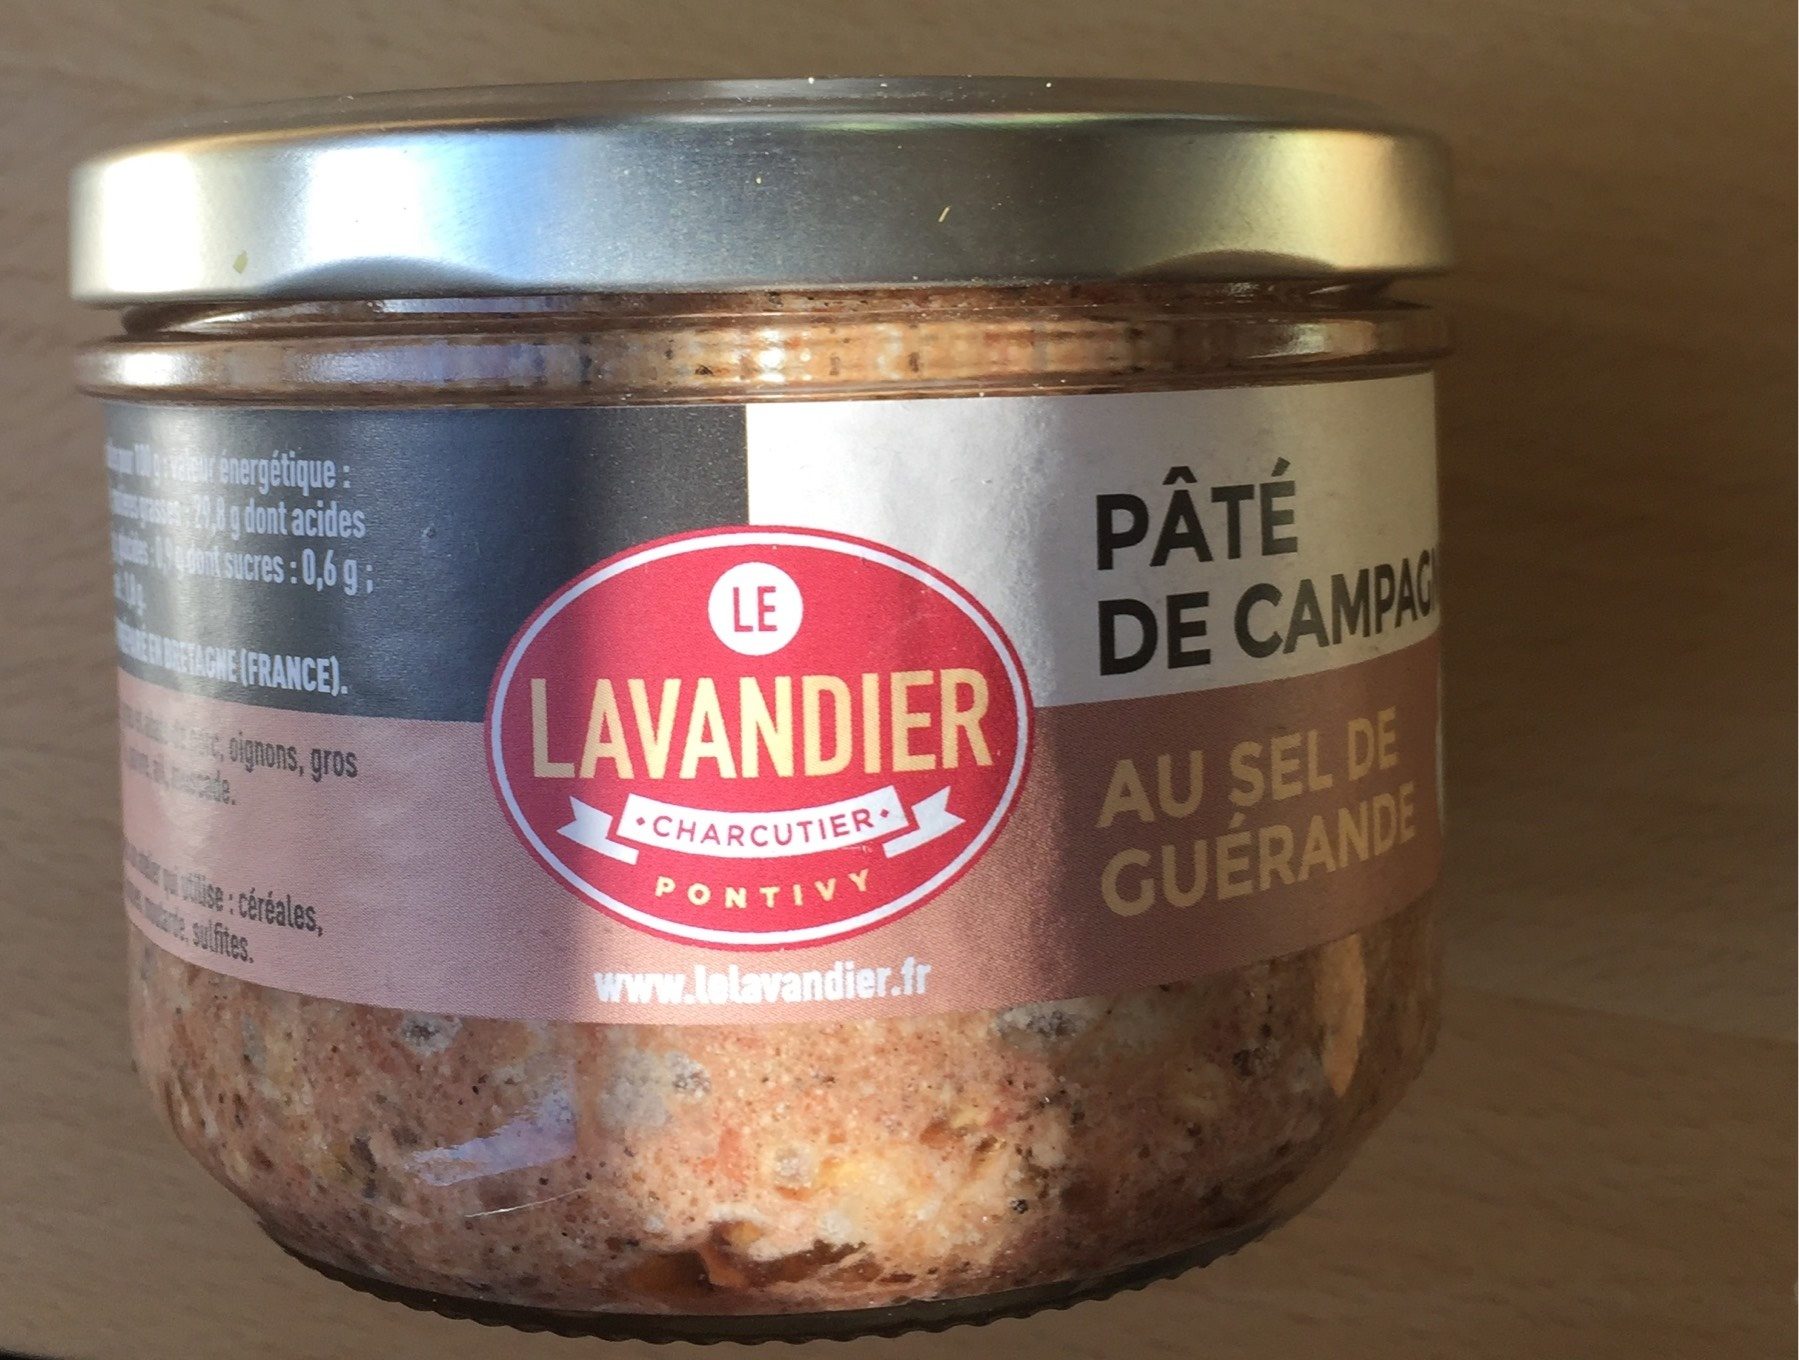 Pâté de campagne au sel de Guérande - Product - fr